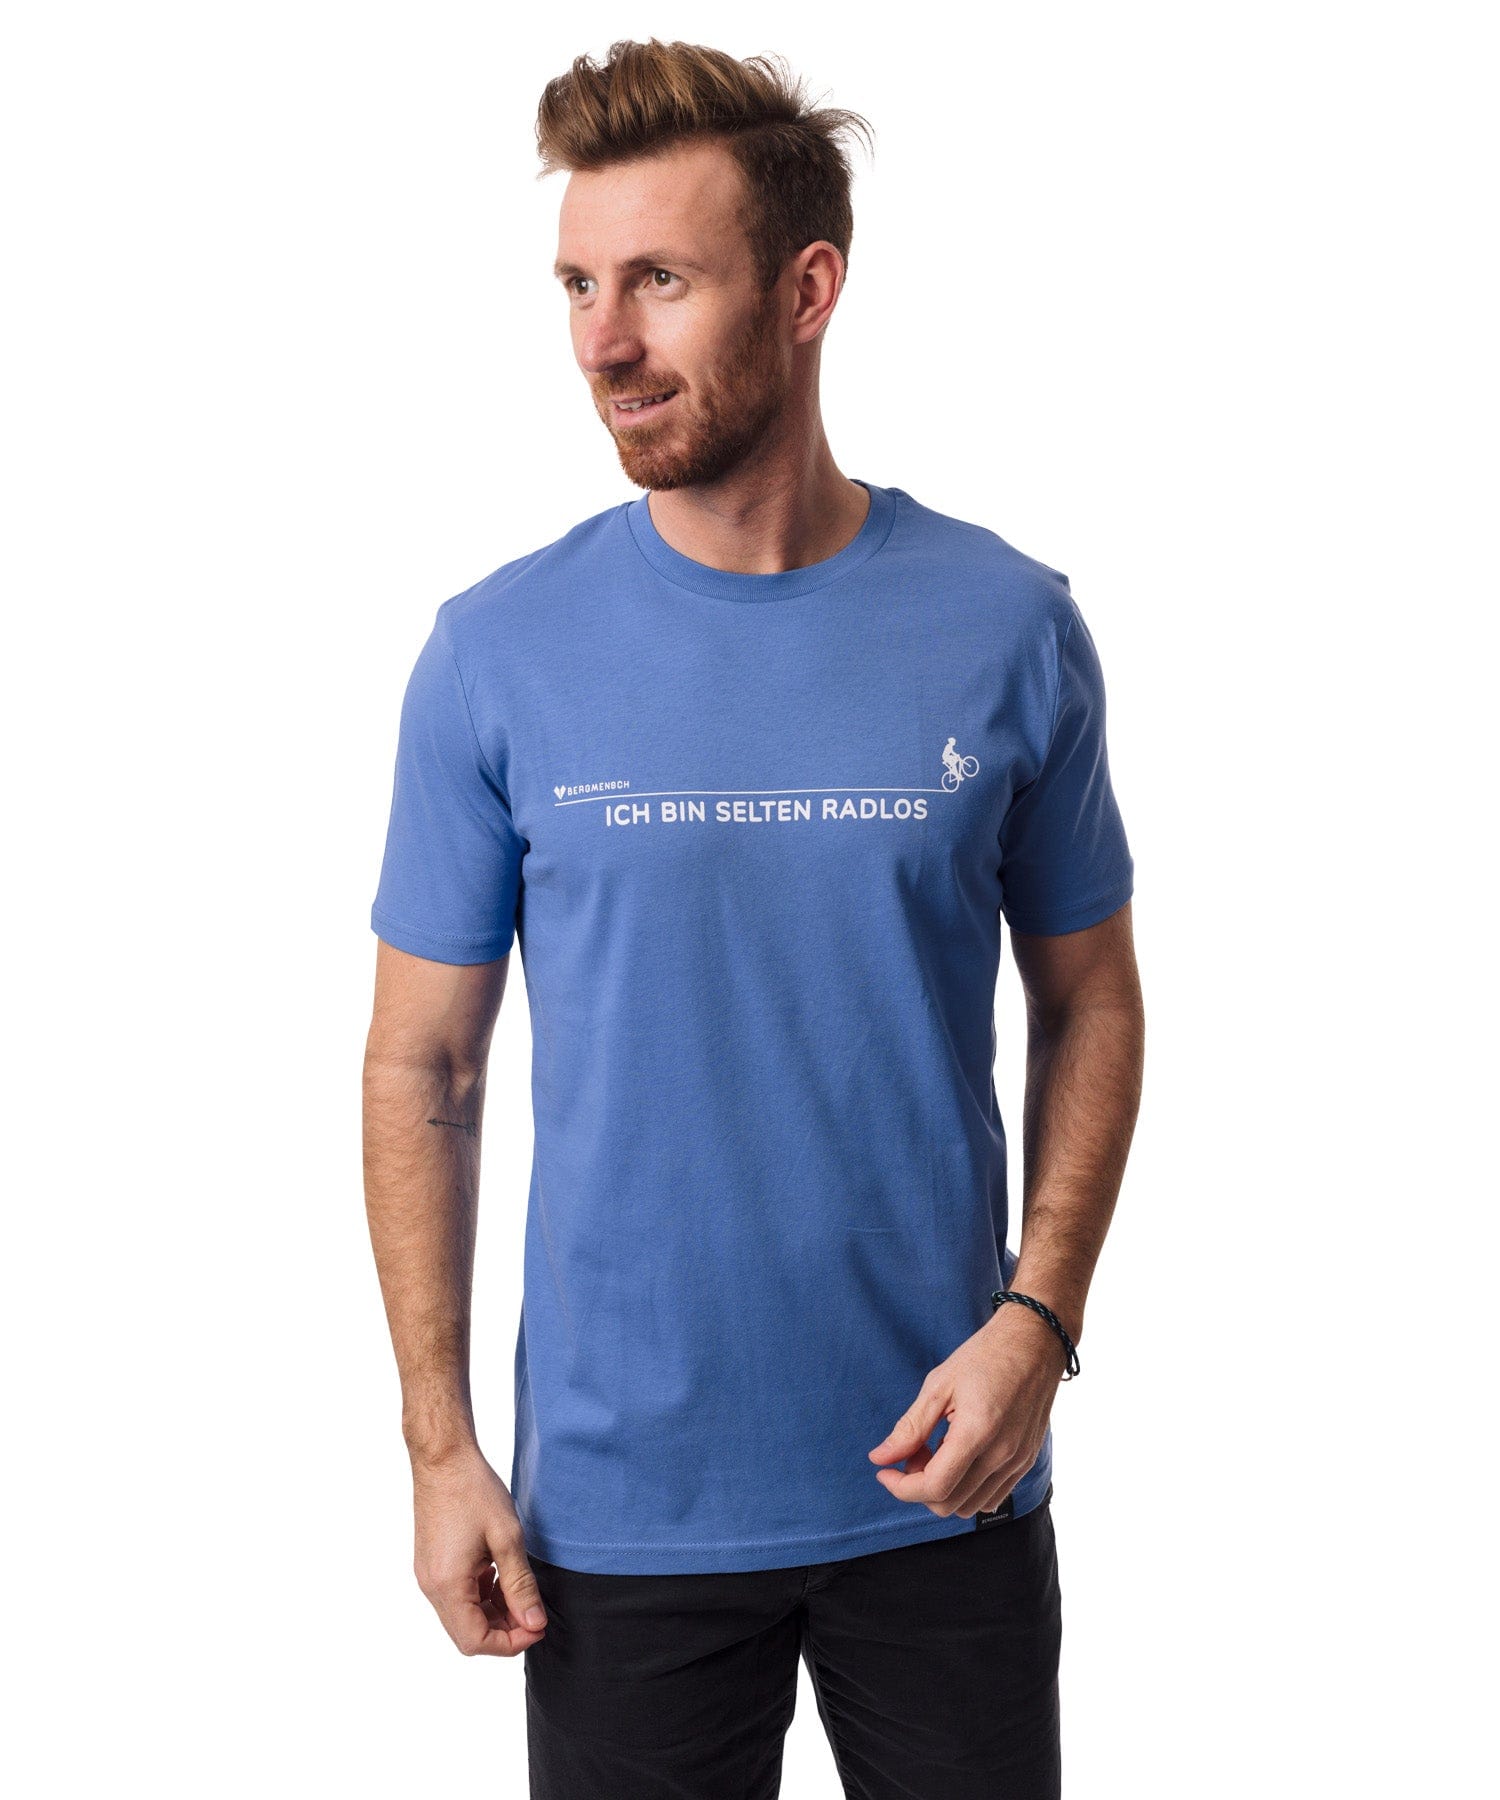 Selten Radlos - Unisex Premium Organic Shirt von Bergmensch